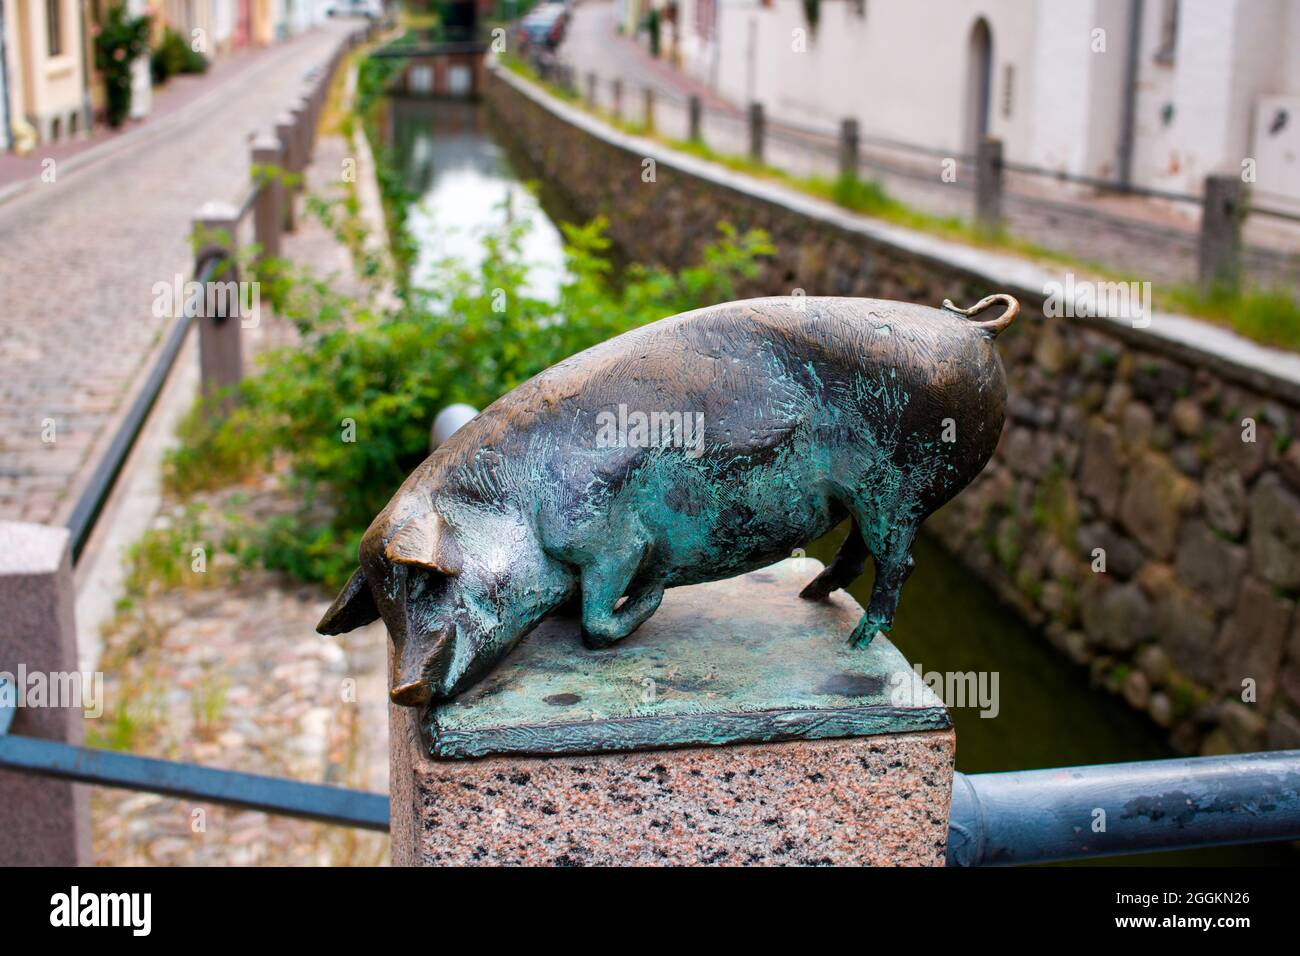 Les cochons de bronze riant, pont, Wismar, Mecklenburg-Poméranie occidentale, Allemagne Banque D'Images